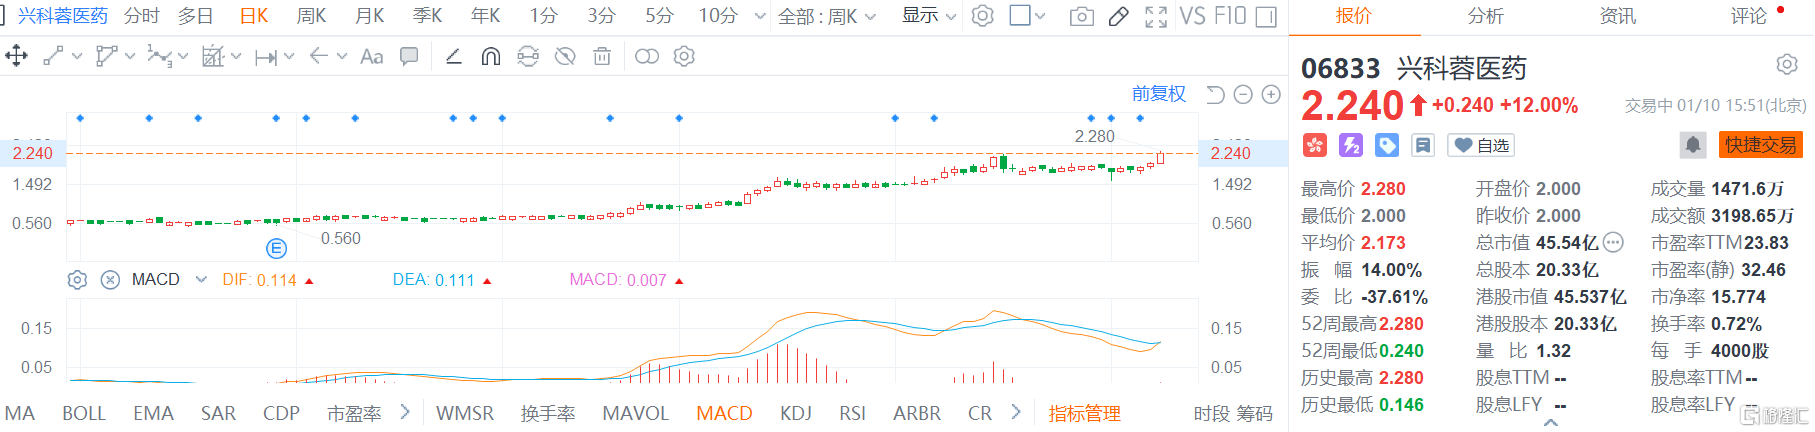 兴科蓉医药(6833.HK)大涨12% 股价再创历史新高